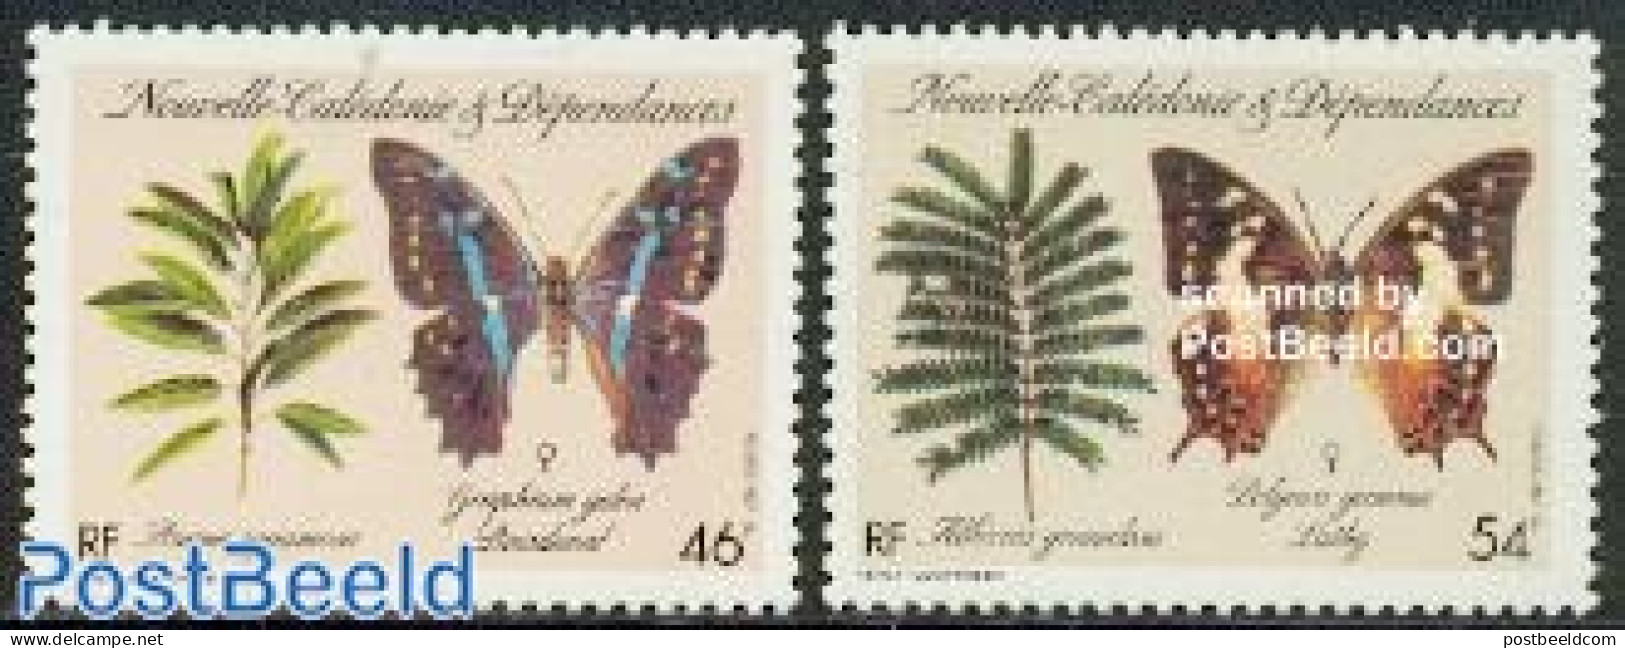 New Caledonia 1987 Butterflies 2v, Mint NH, Nature - Butterflies - Ongebruikt